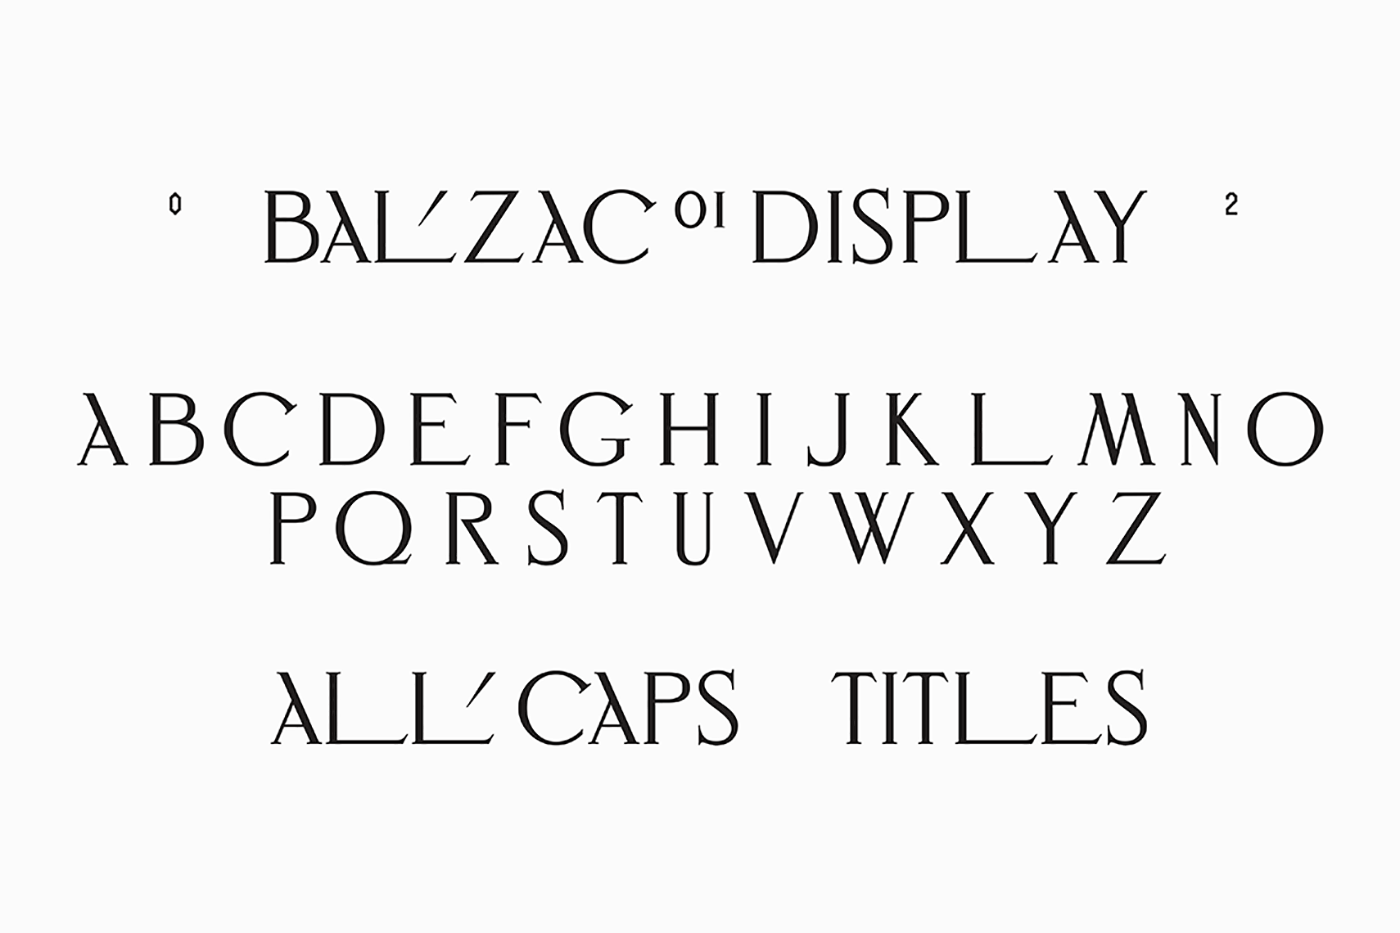 balzac emblemcapital realstate anagramastudio rodin Logotype engraving highend Technology chisel